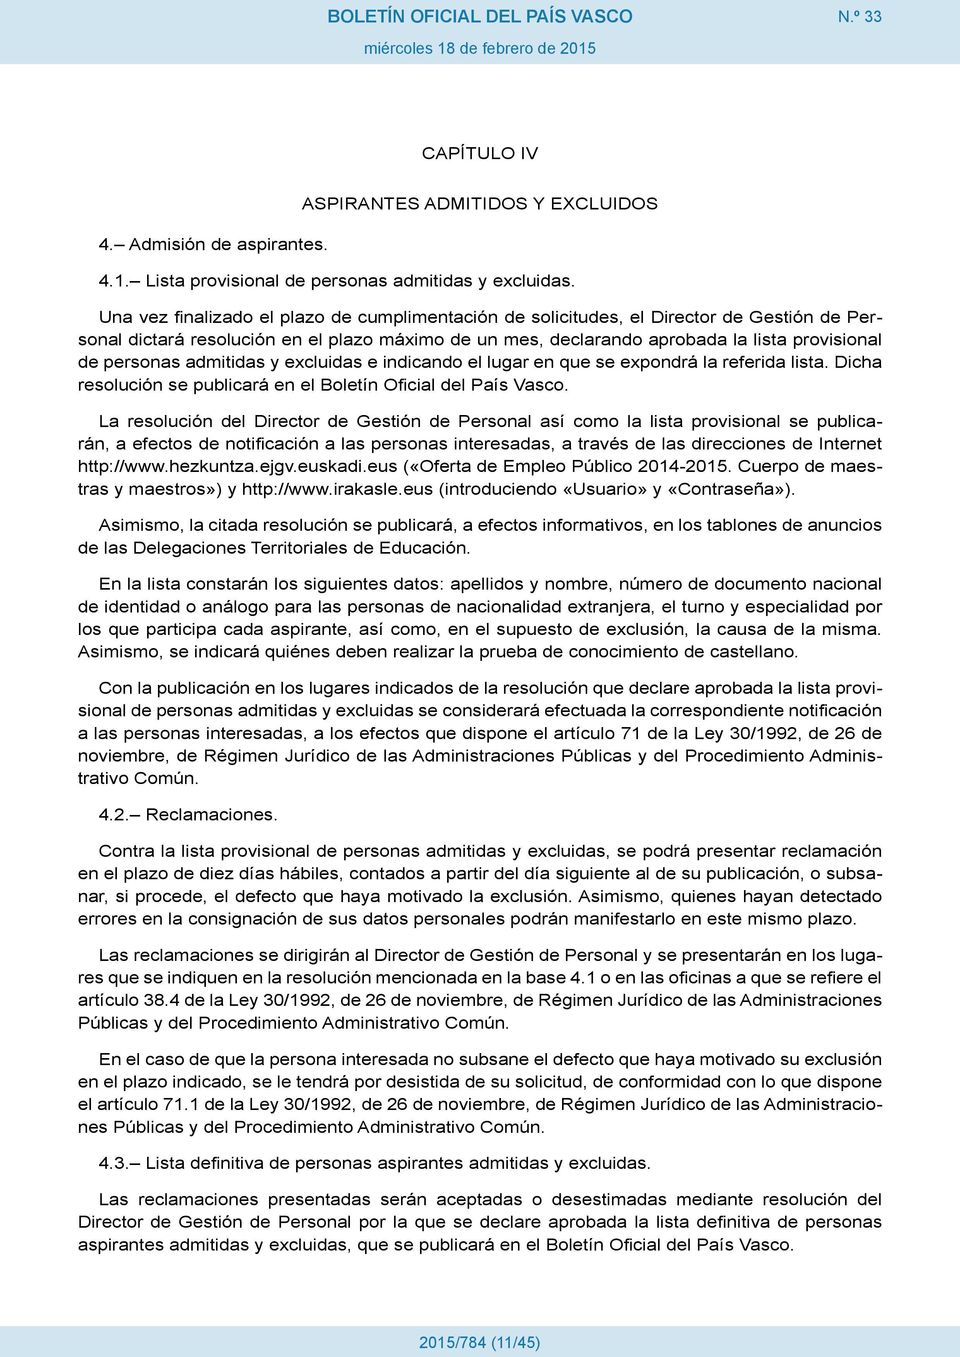 admitidas y excluidas e indicando el lugar en que se expondrá la referida lista. Dicha resolución se publicará en el Boletín Oficial del País Vasco.